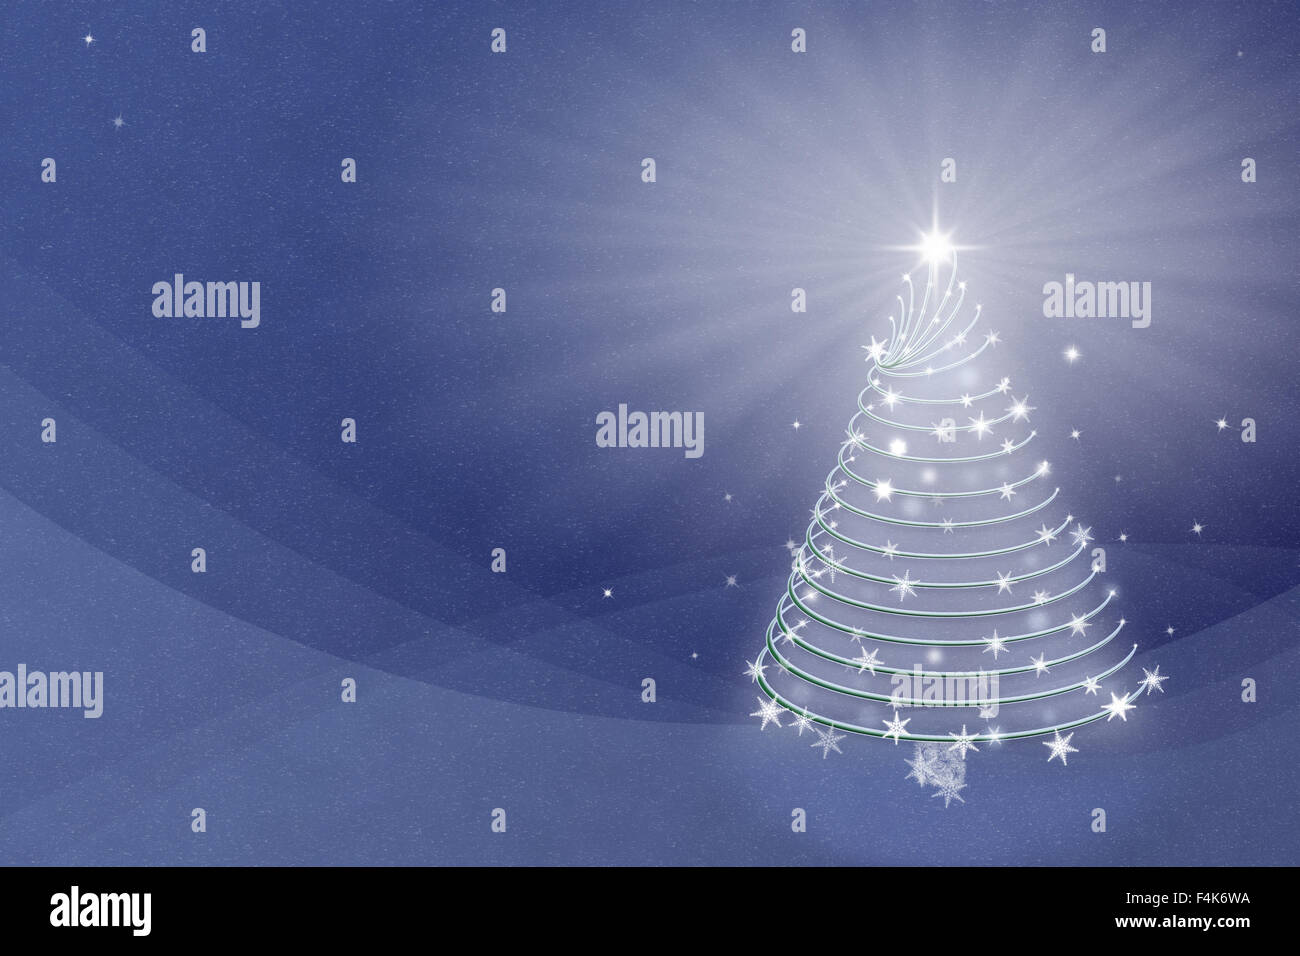 Árbol de Navidad Mágica en ilustración de fondo azul Foto de stock